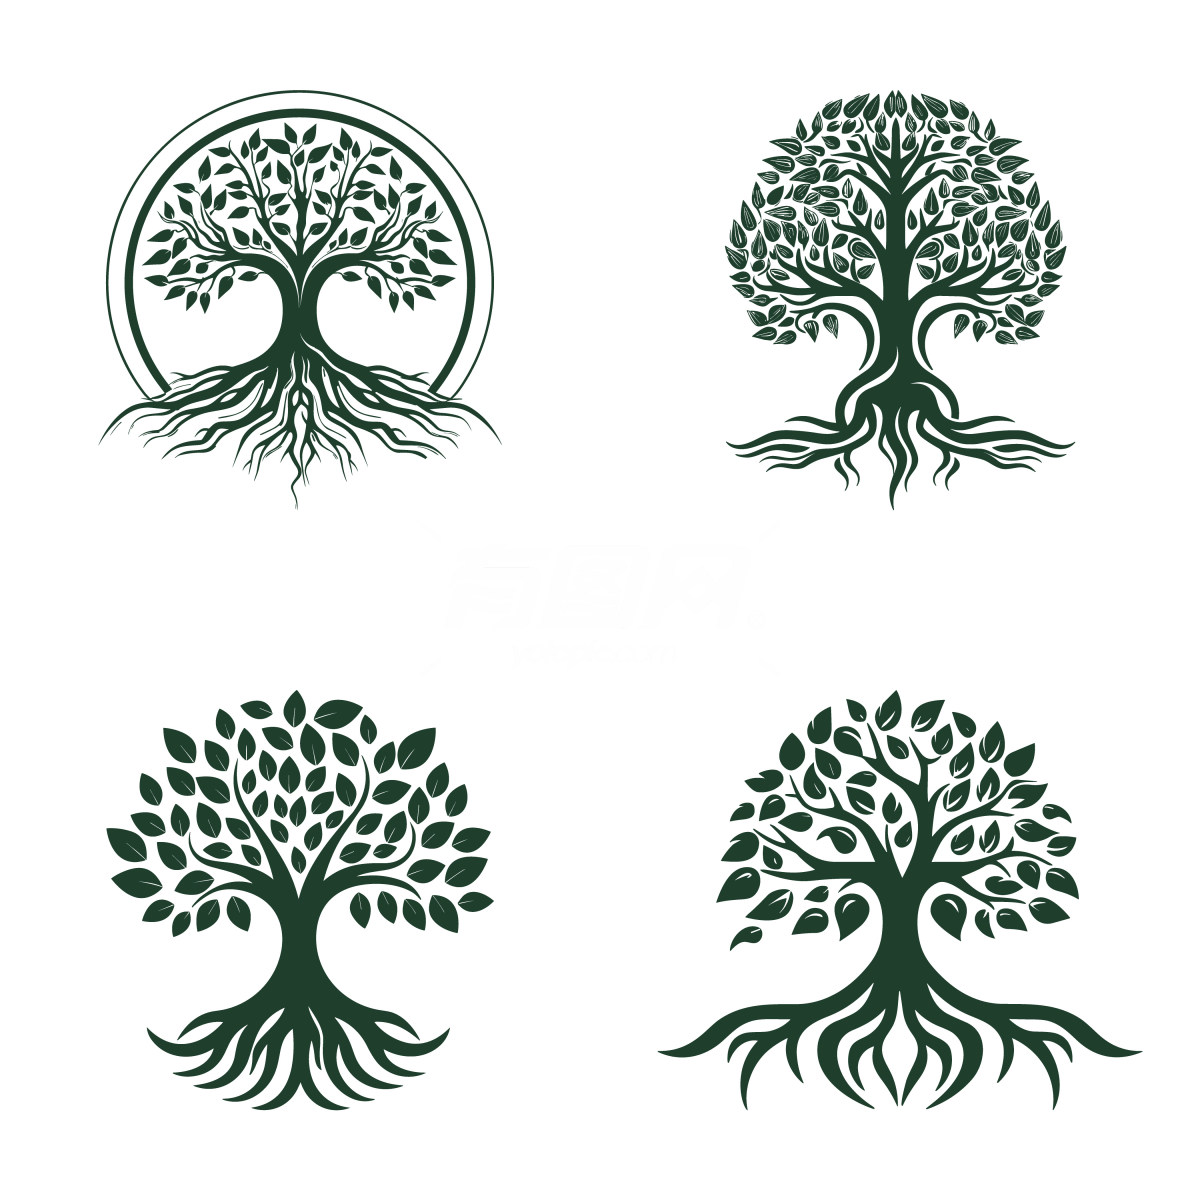 不同设计风格的树形图